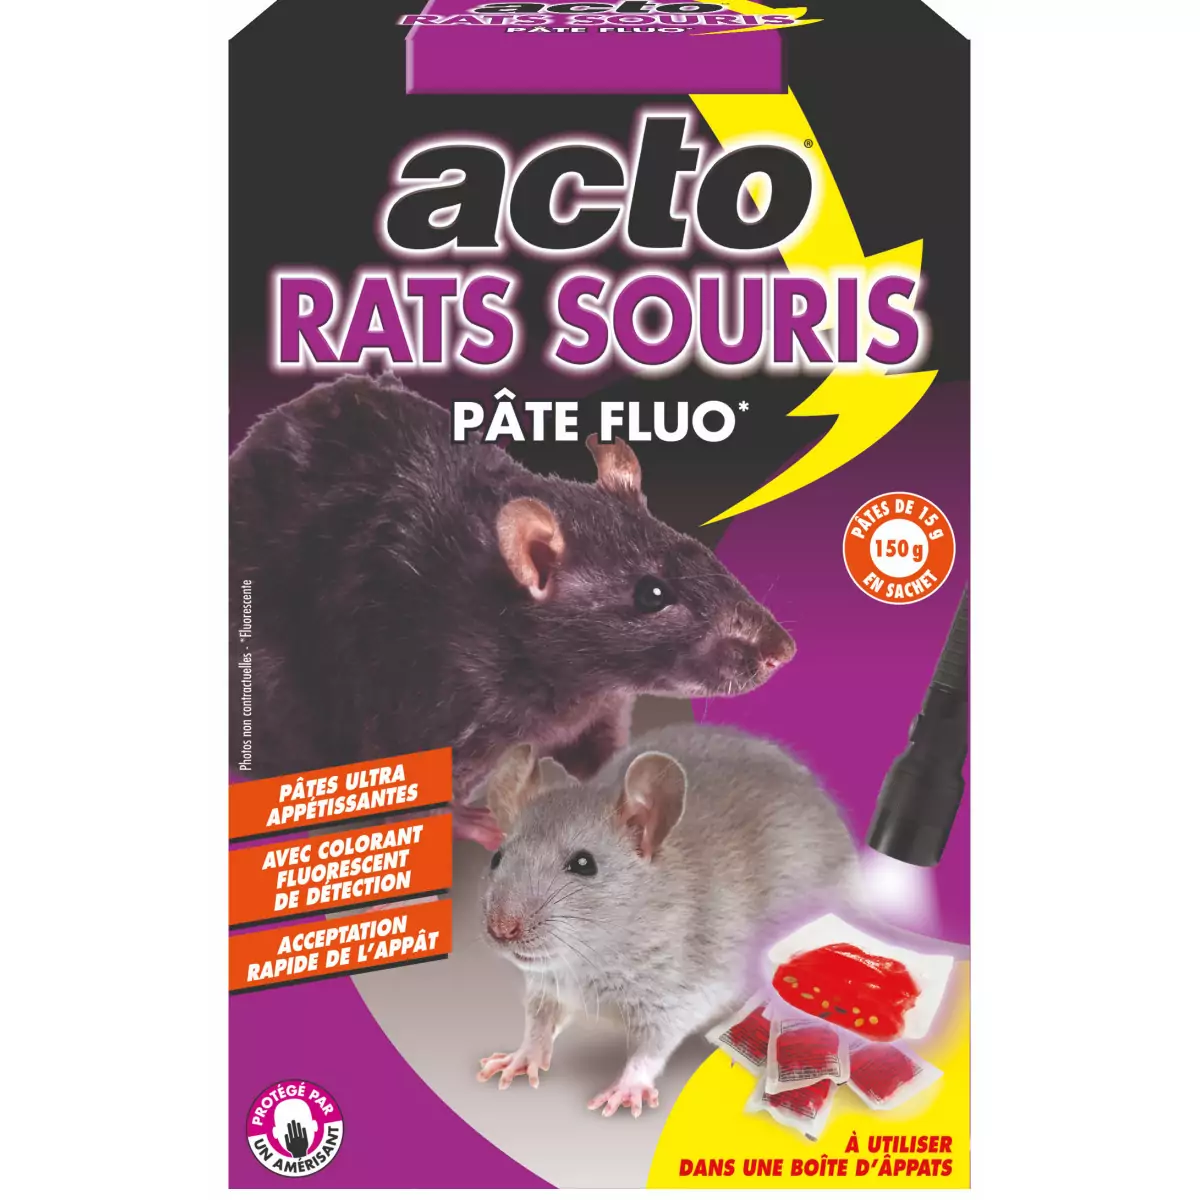 FRAP - Pâte - Souris- et Mort aux Rats - Rat Poison - Souris